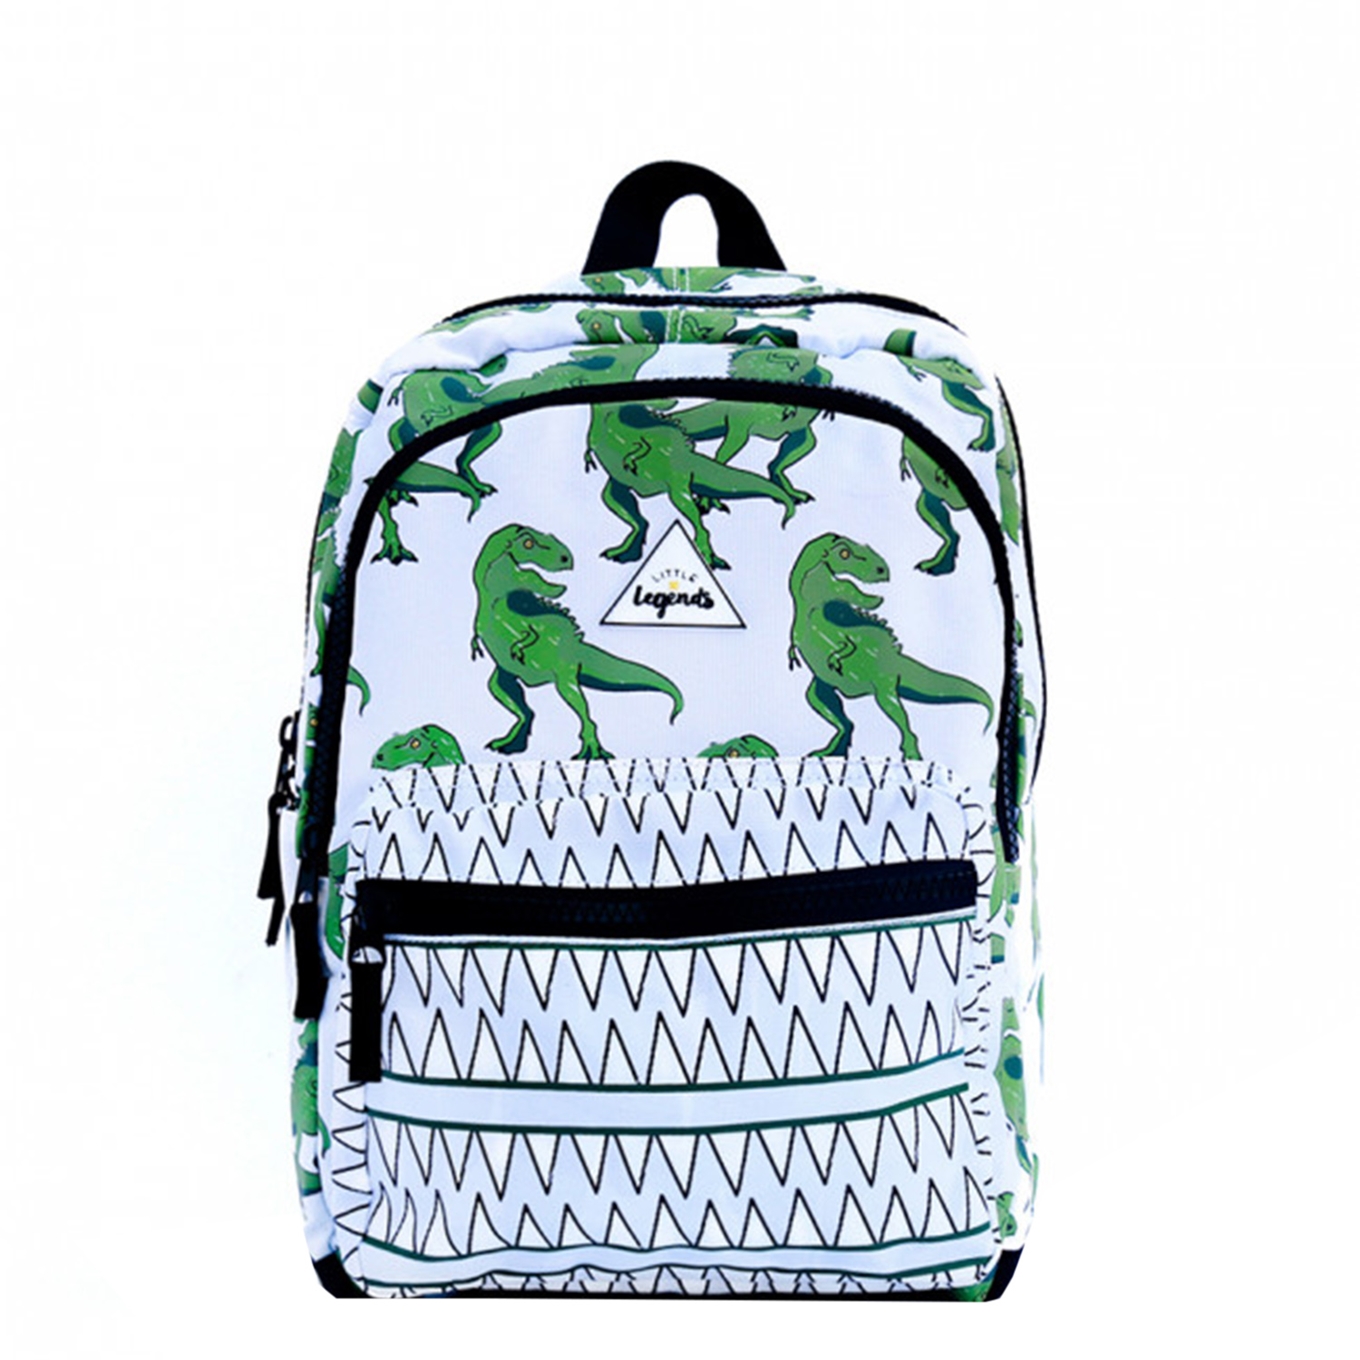 Little Legends Dino Backpack L groen - wit Kindertas